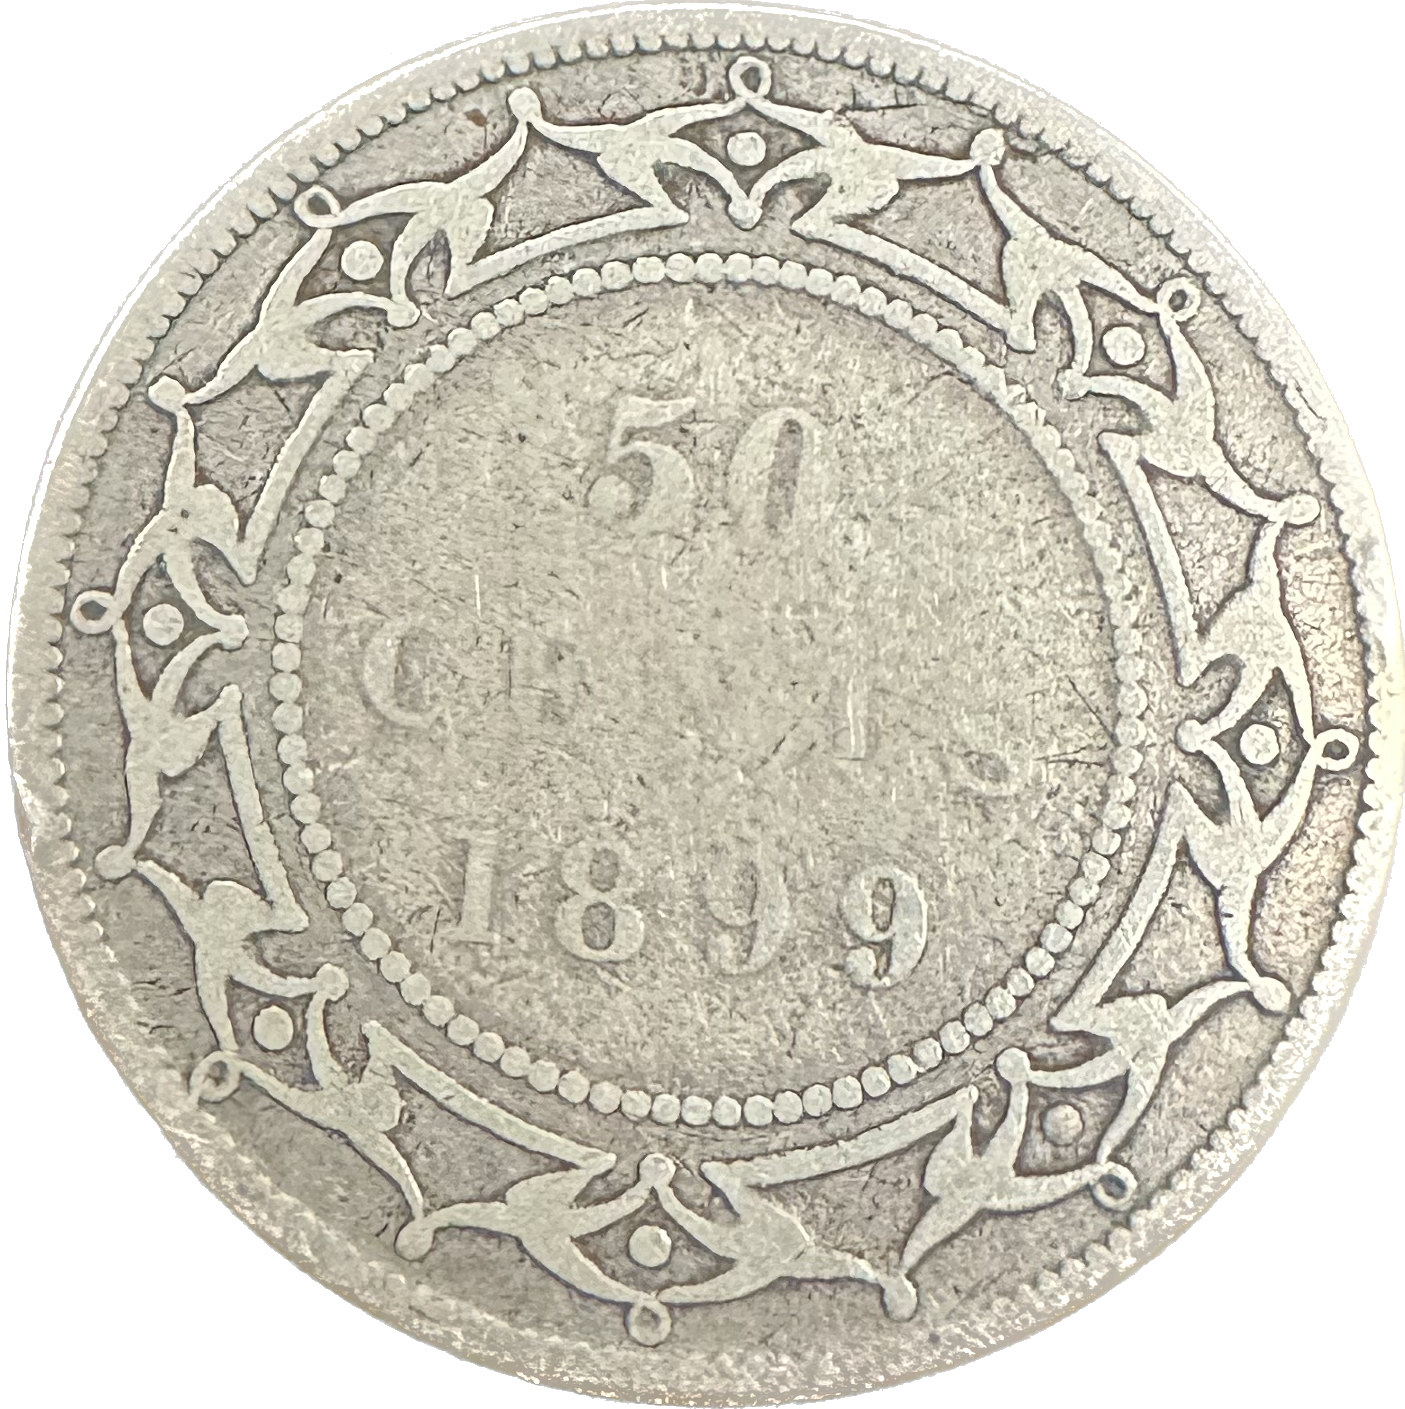 Canada Newfoundland 50 Cents 1899 G-4 N9 Coin